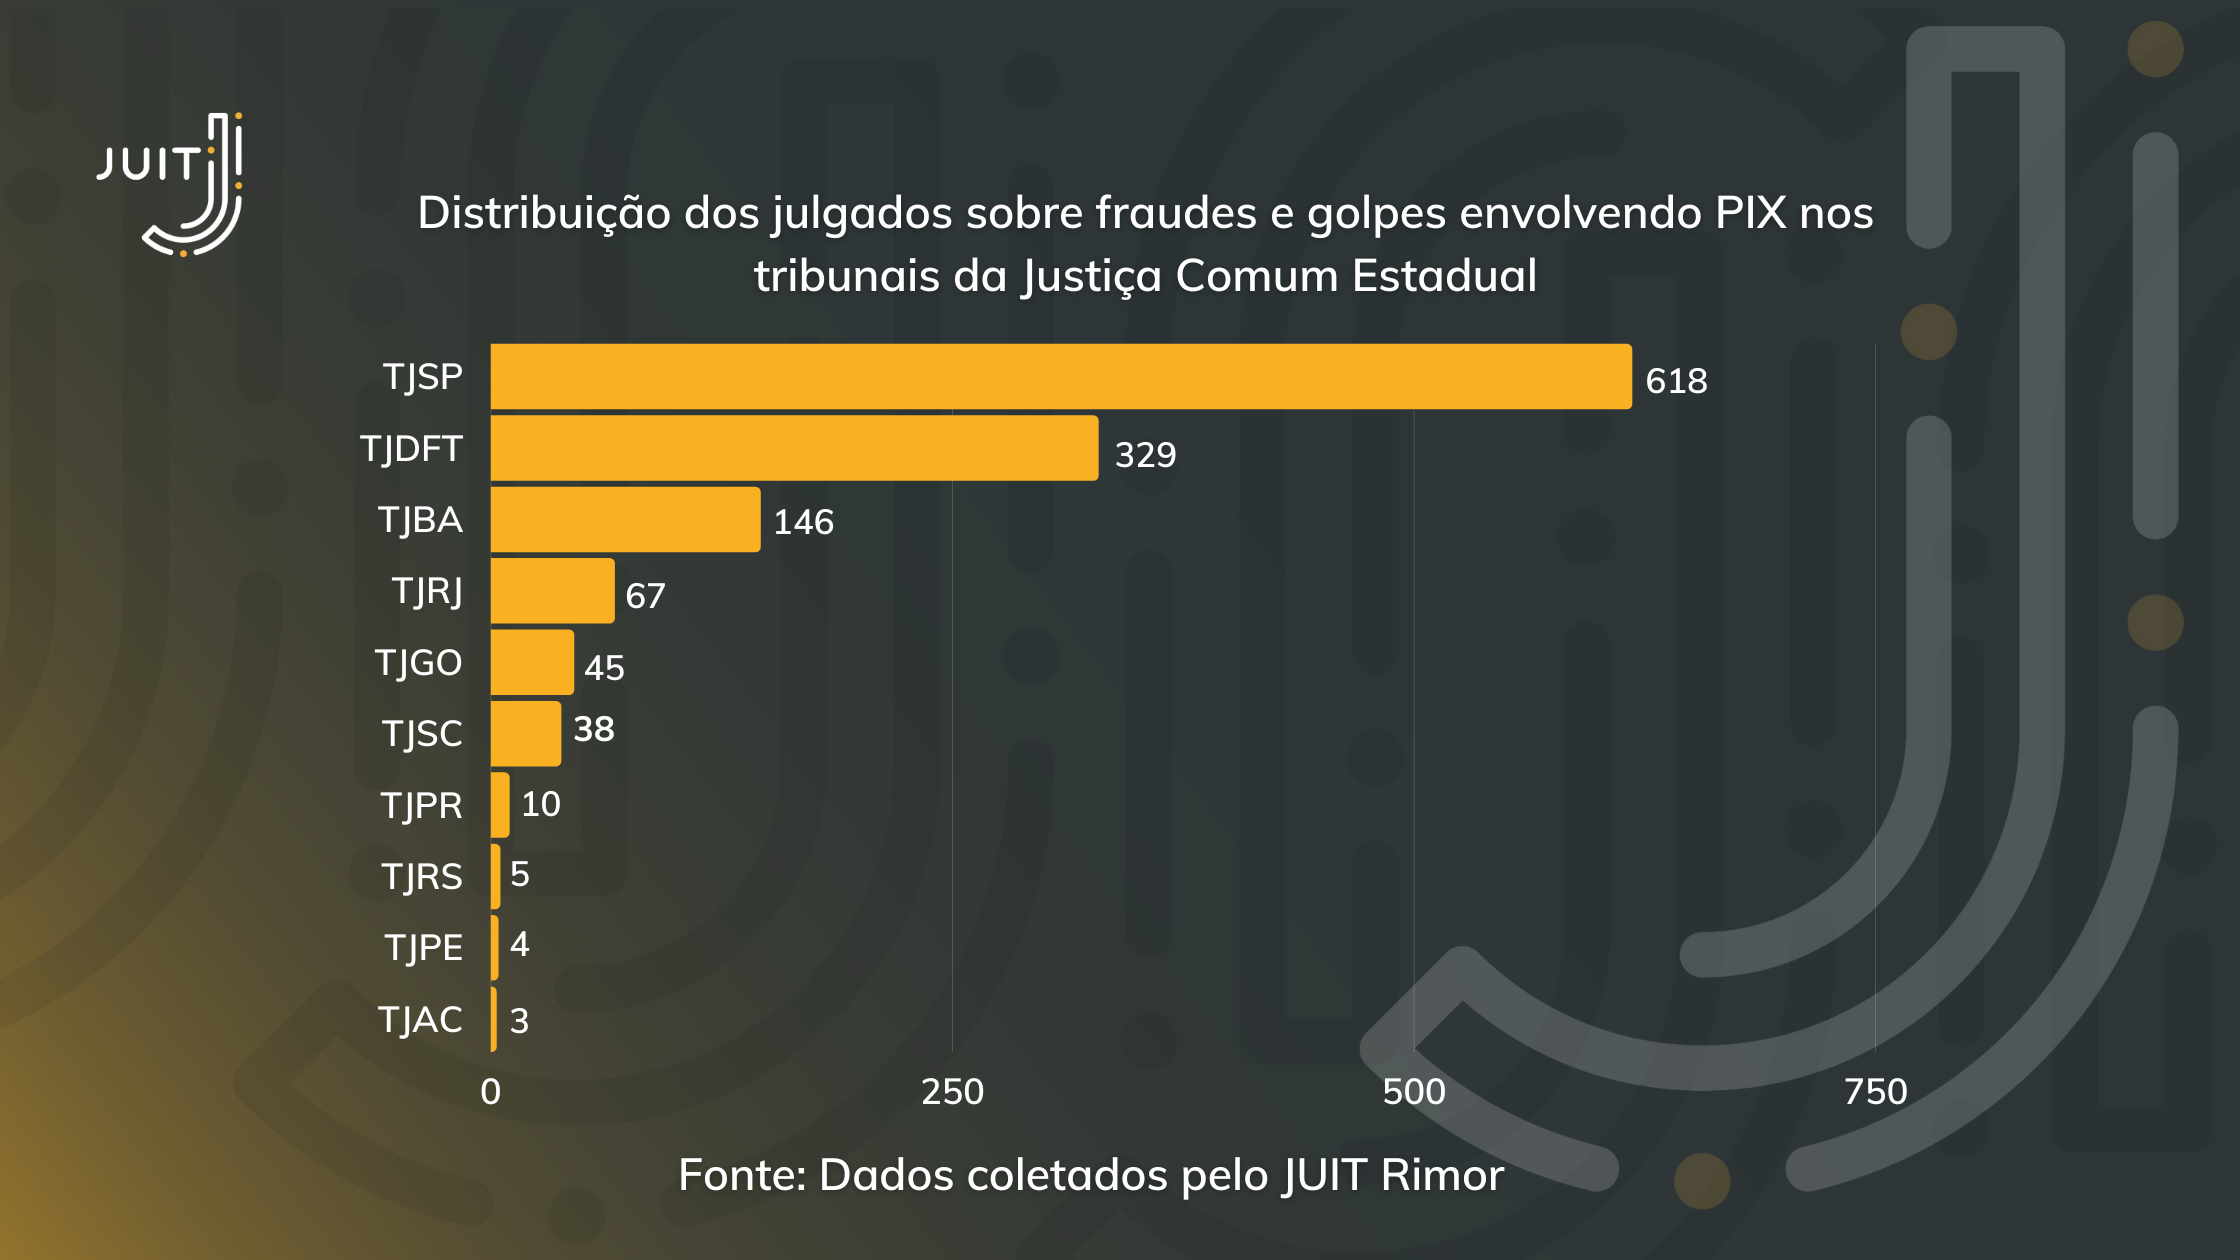 Distribuição dos acórdãos sobre golpe ou fraude envolvendo PIX nos TJ’s da Justiça Comum Estadual